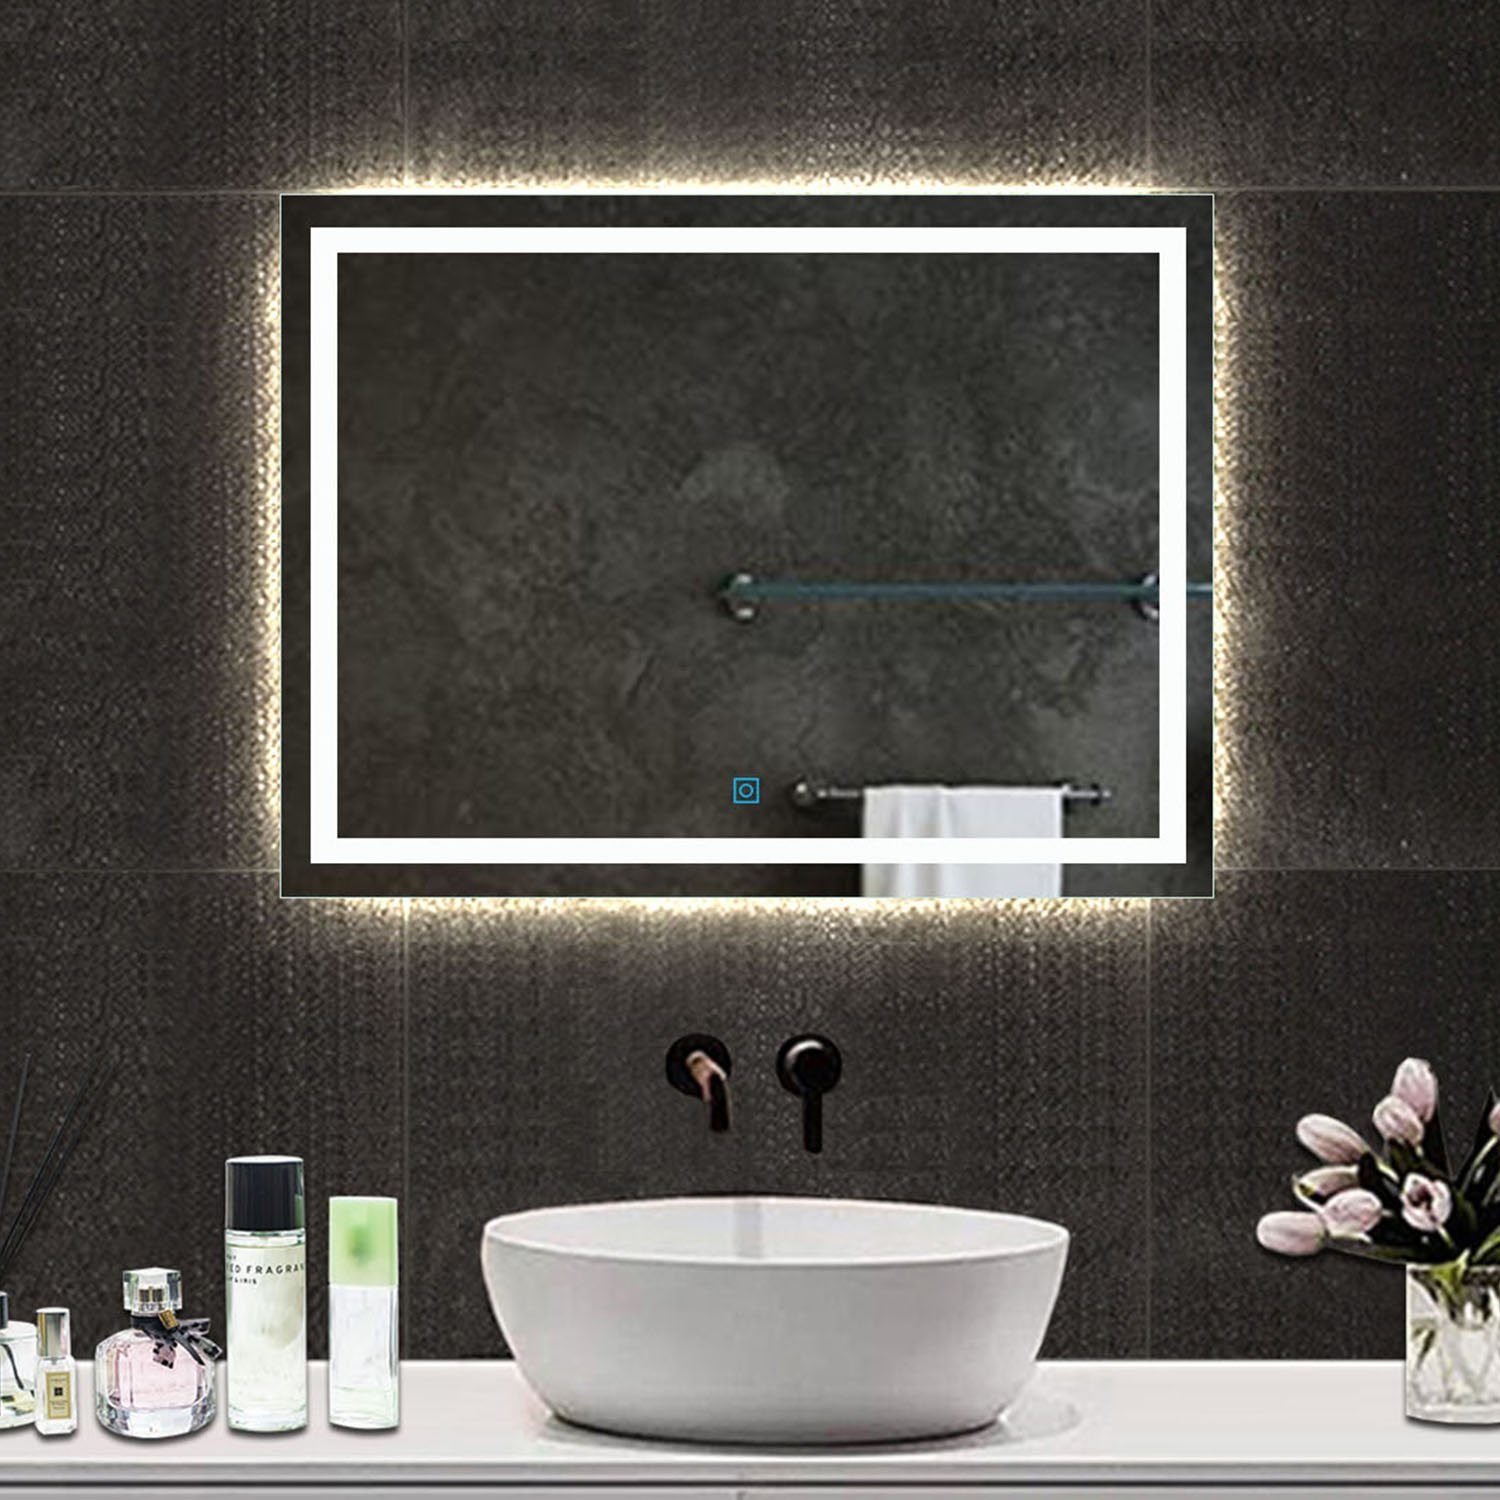 Wandspiegel, Beleuchtung mit Touch duschspa 100cm breit Beschlagfrei Badspiegel Badspiegel